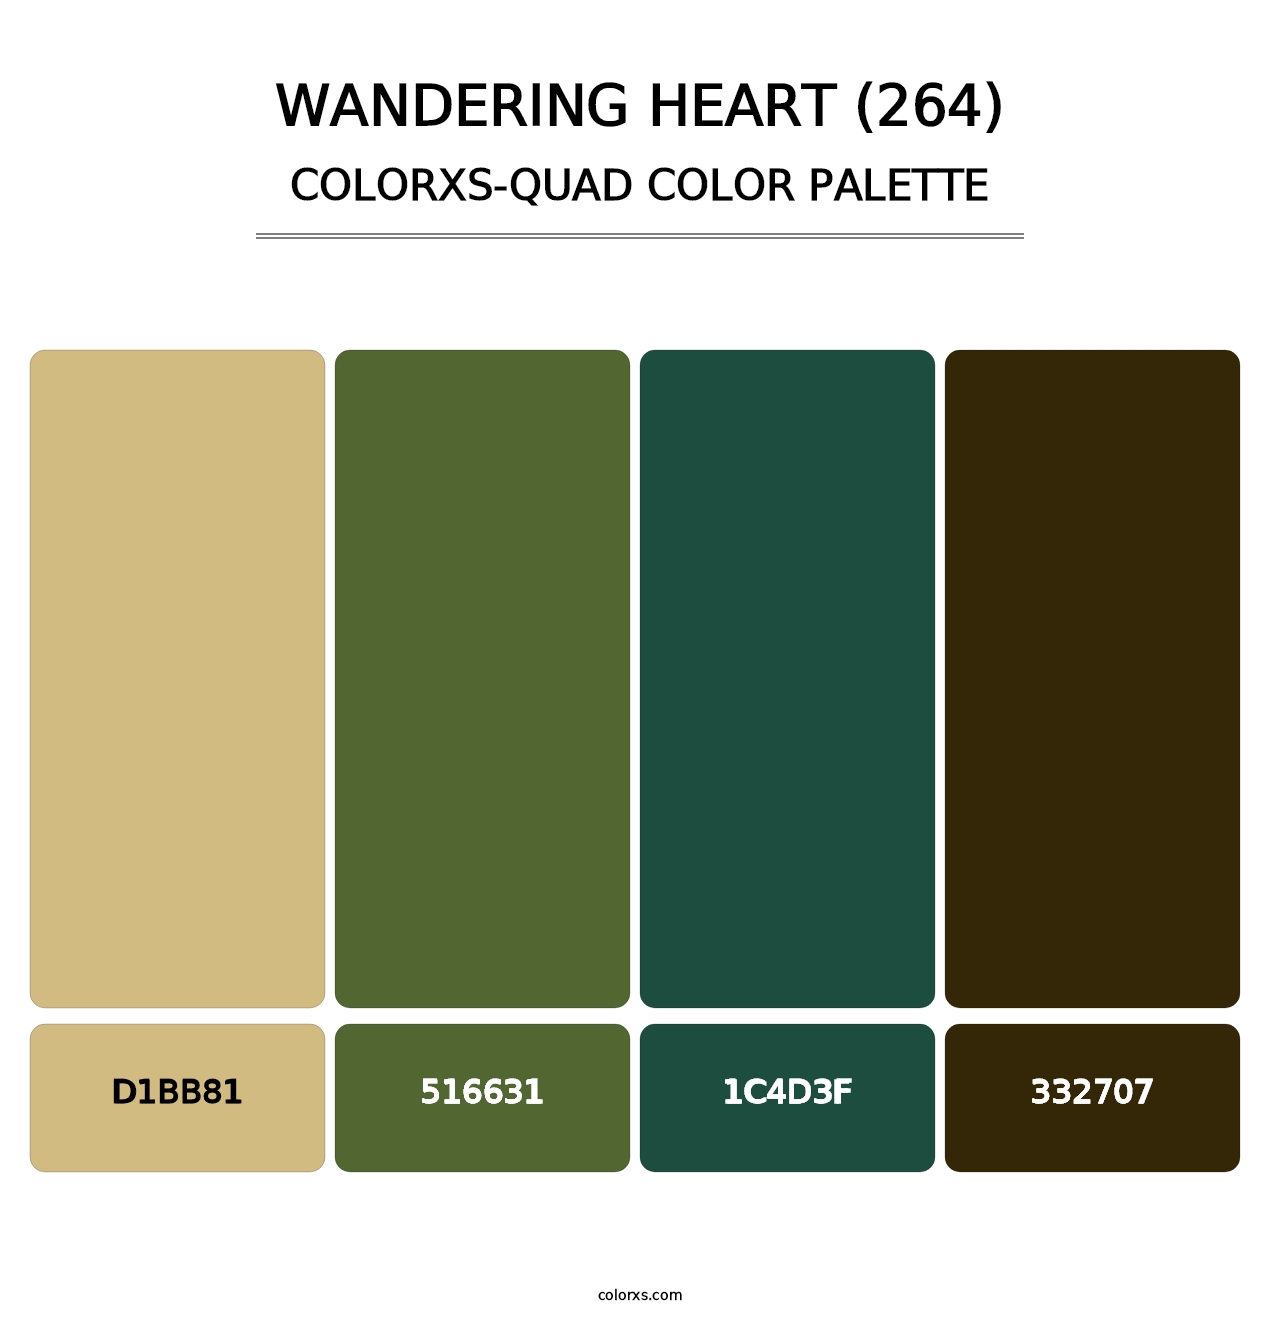 Wandering Heart (264) - Colorxs Quad Palette